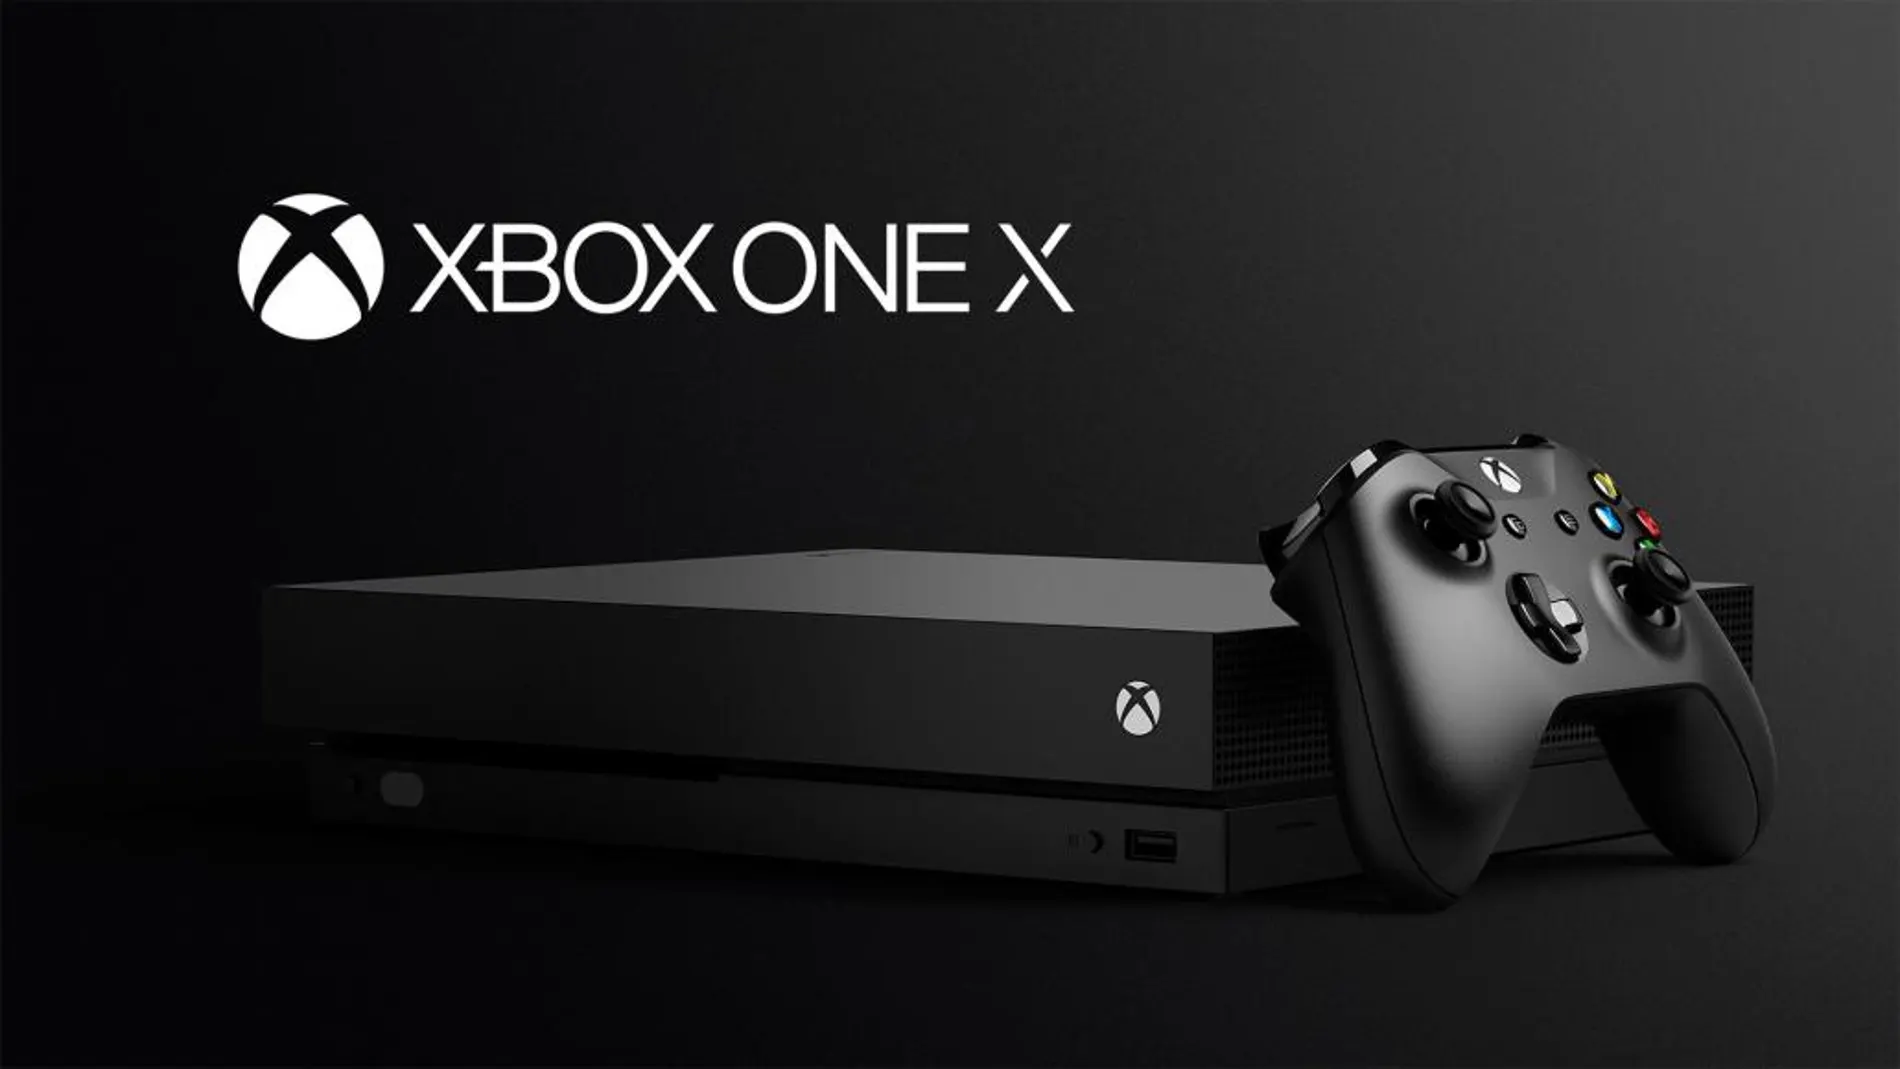 Llega a las tiendas Xbox One X, la evolución natural del sistema Xbox